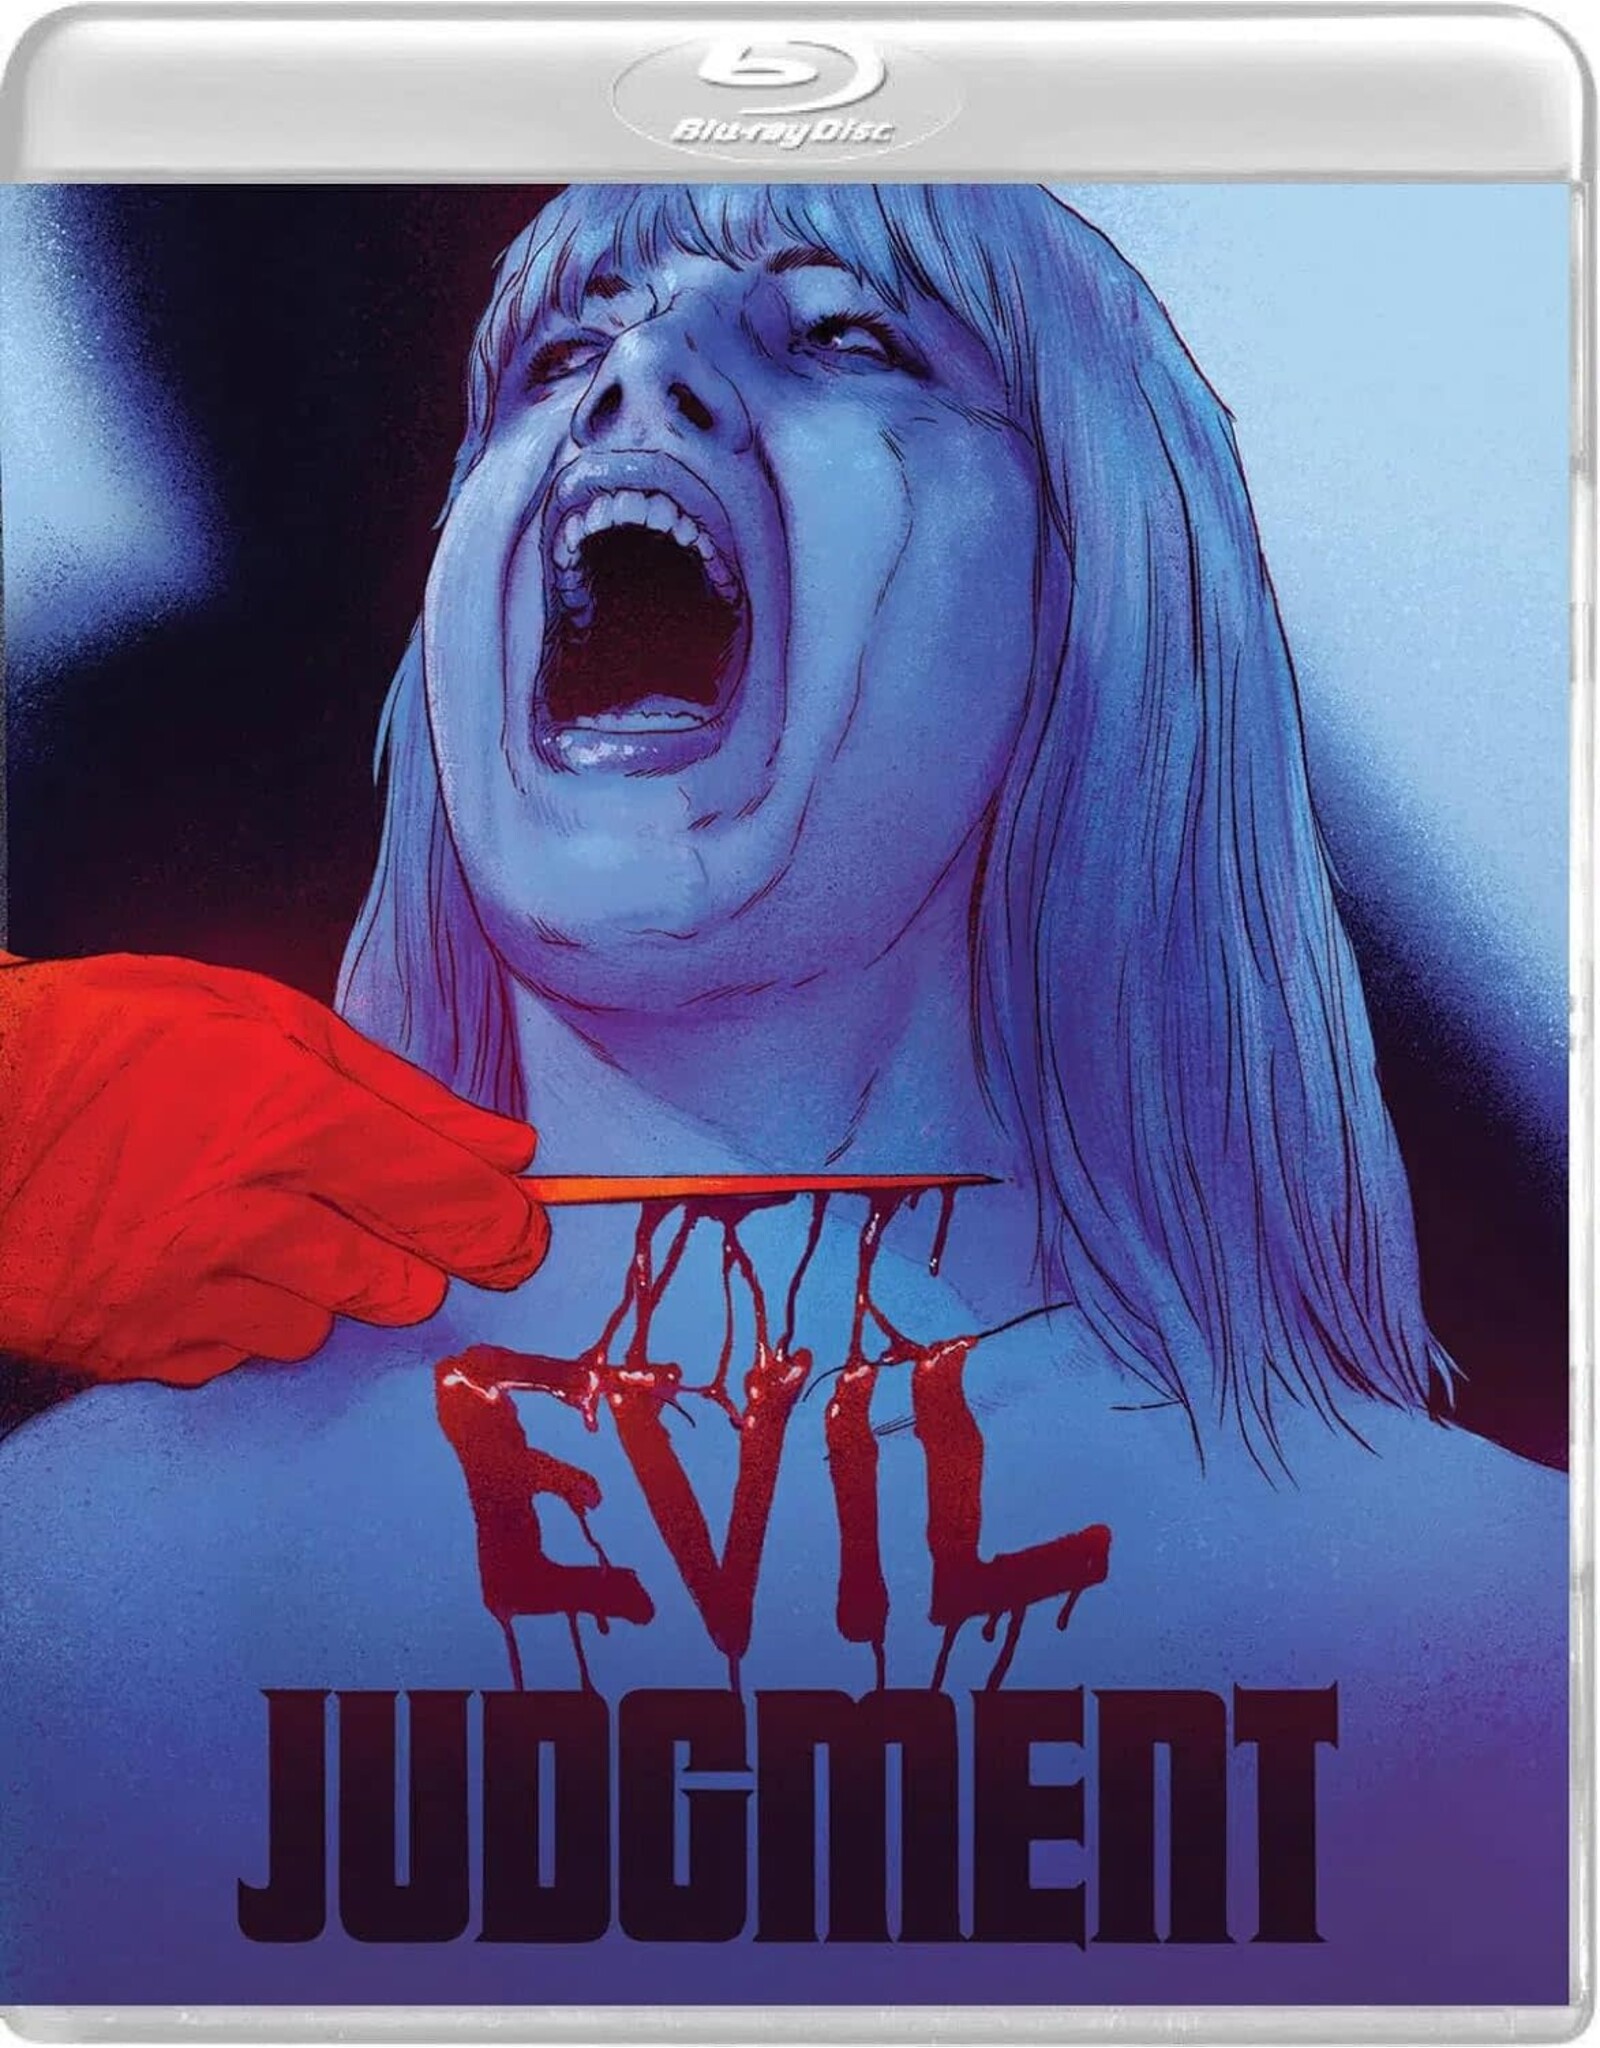 Horror Evil Judgement - Vinegar Syndrome (Brand New w/ Slipcover)